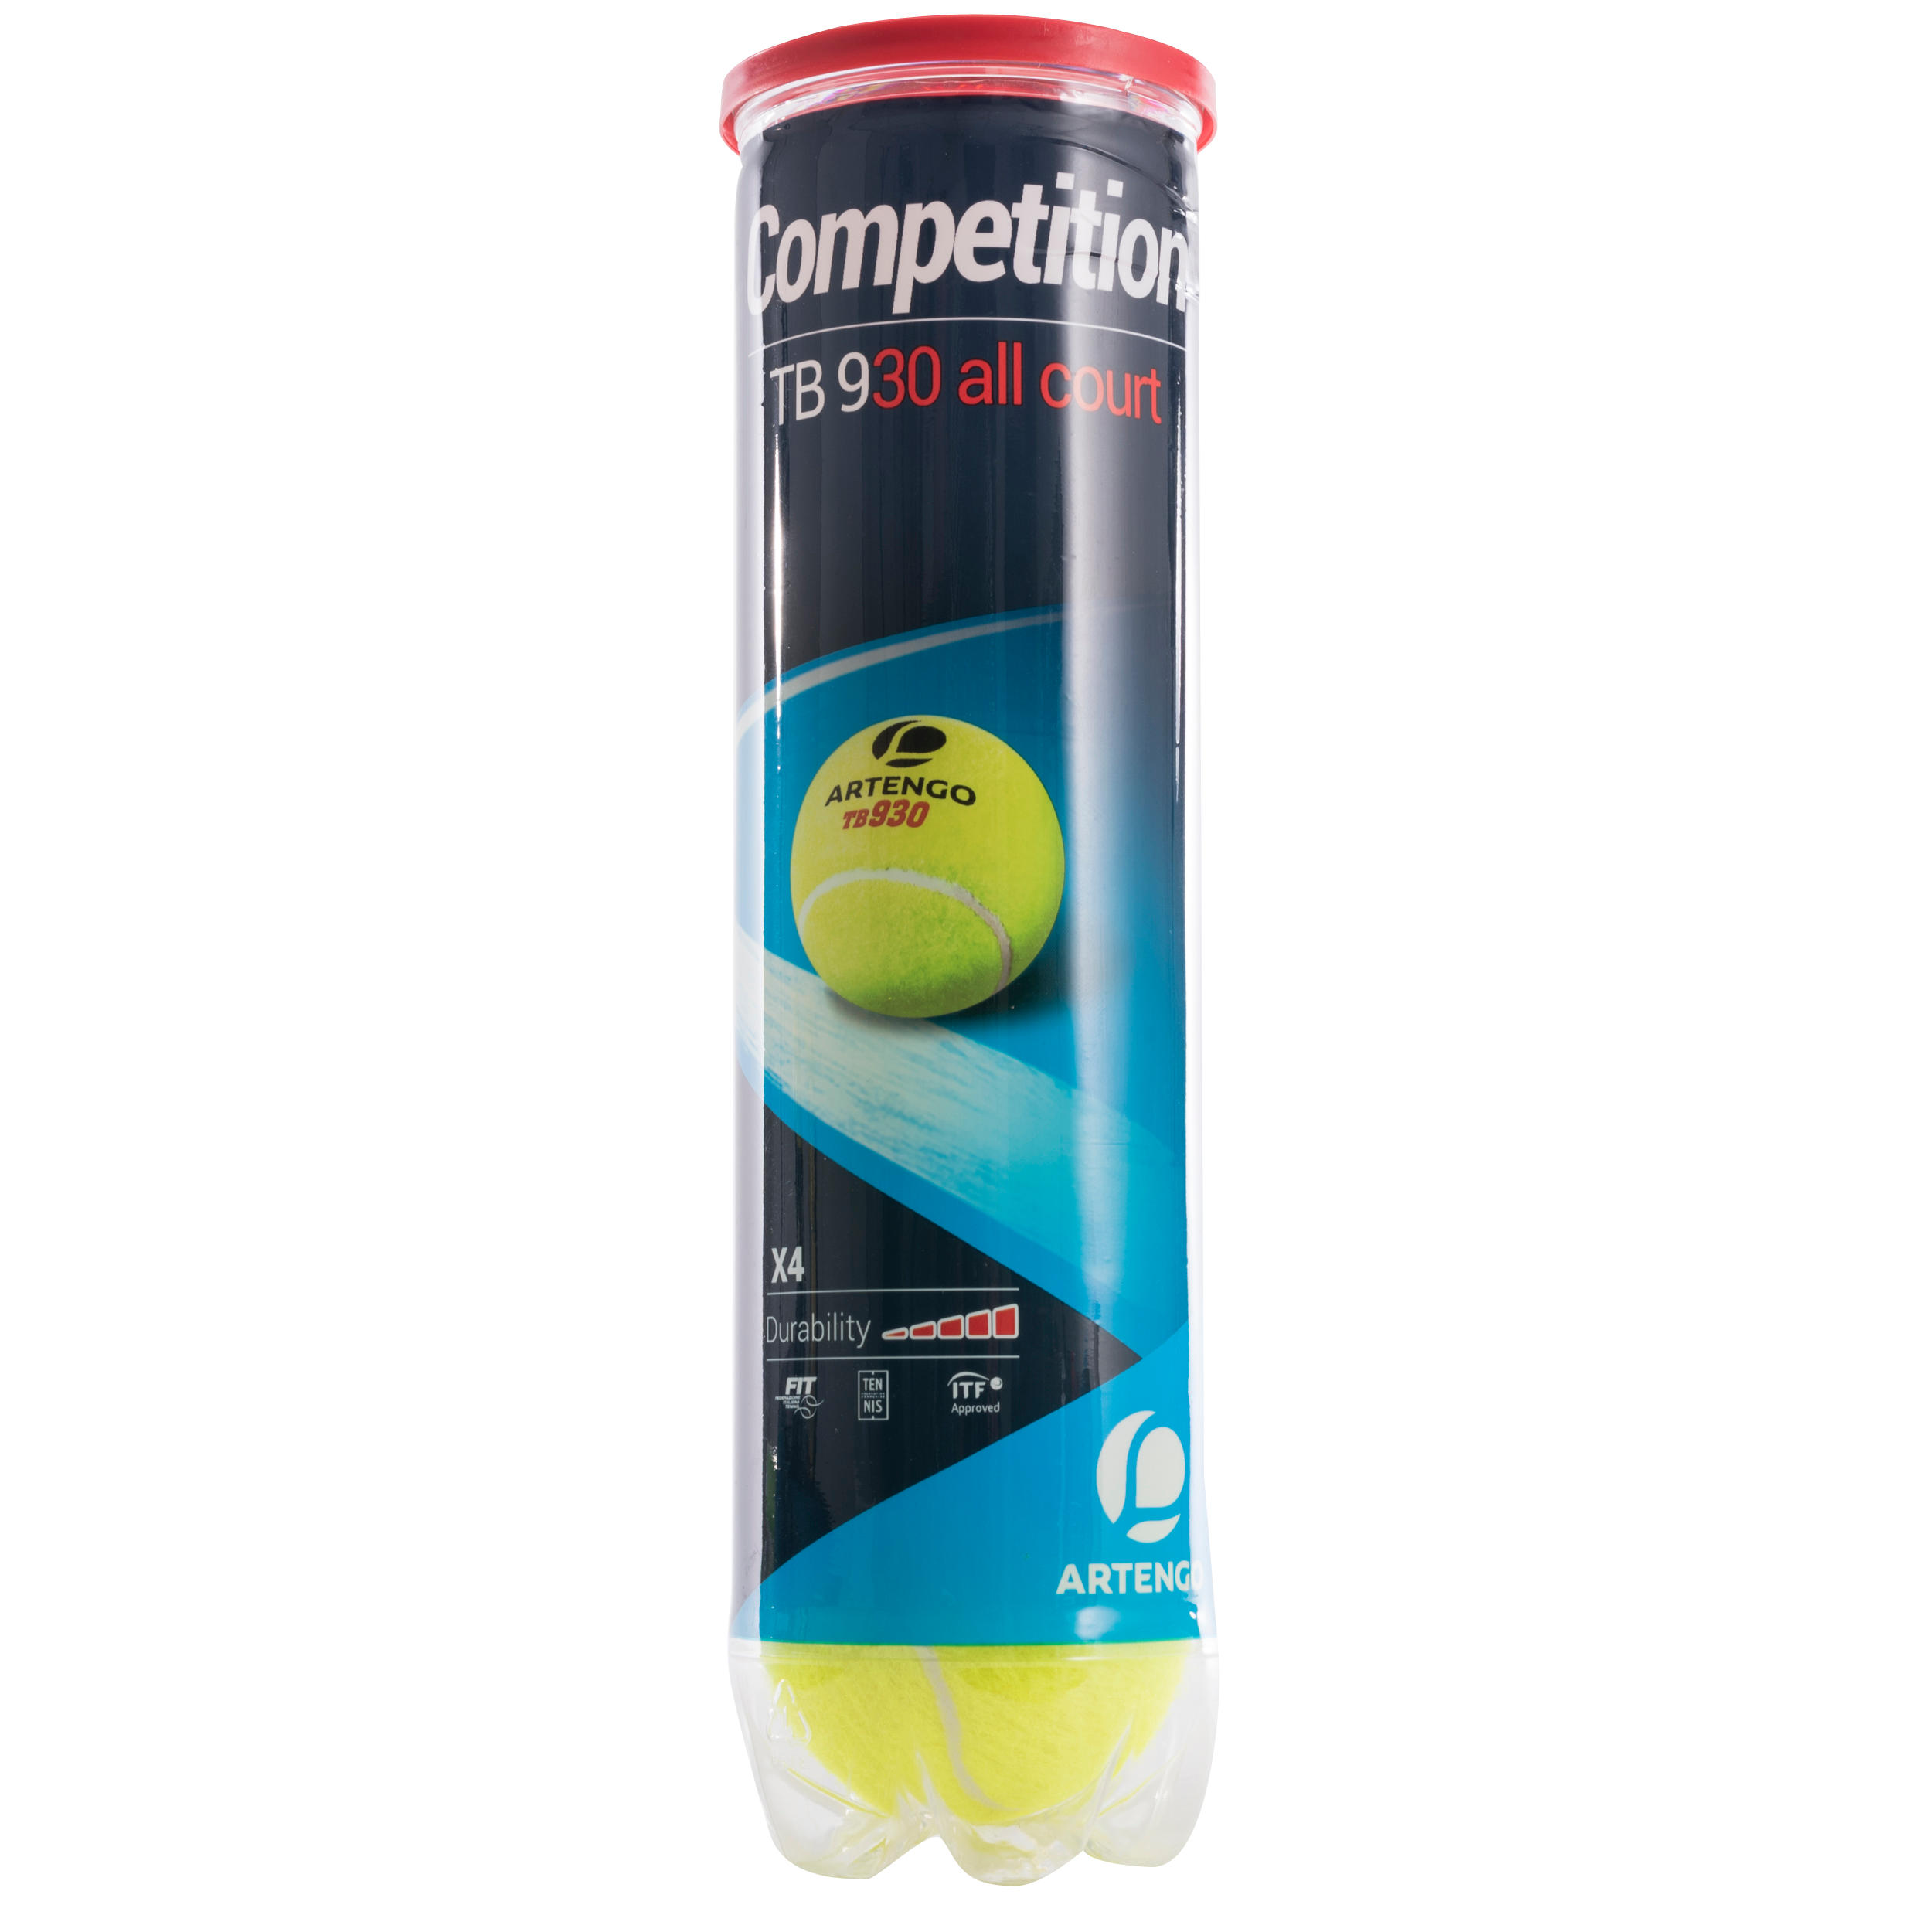 [ส่งฟรี ] ลูกเทนนิสรุ่น TB930 (แพ็ค 4 ลูก) (สีเหลือง) Tennis Ball TB930 4-Pack - Yellow Sport tennis Tennis Ball  อุปกรณ์เทนนิสแท้ คุณภาพสูง โปรโมชั่นสุดคุ้ม